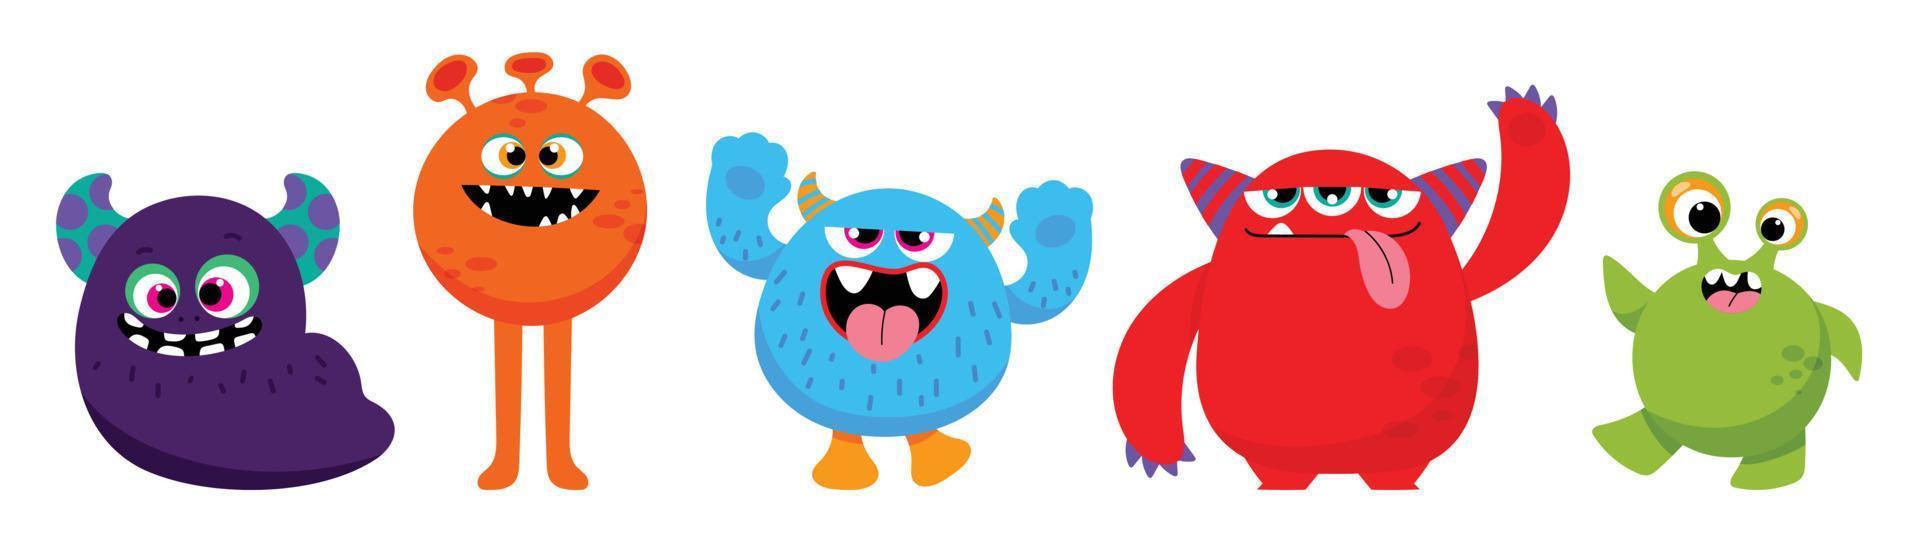 söt och söt monster barn ikon uppsättning. samling av söt tecknad serie monster i annorlunda lekfull tecken. rolig jäkel, utomjording, demon och varelse platt vektor design för komisk, utbildning, presentation.